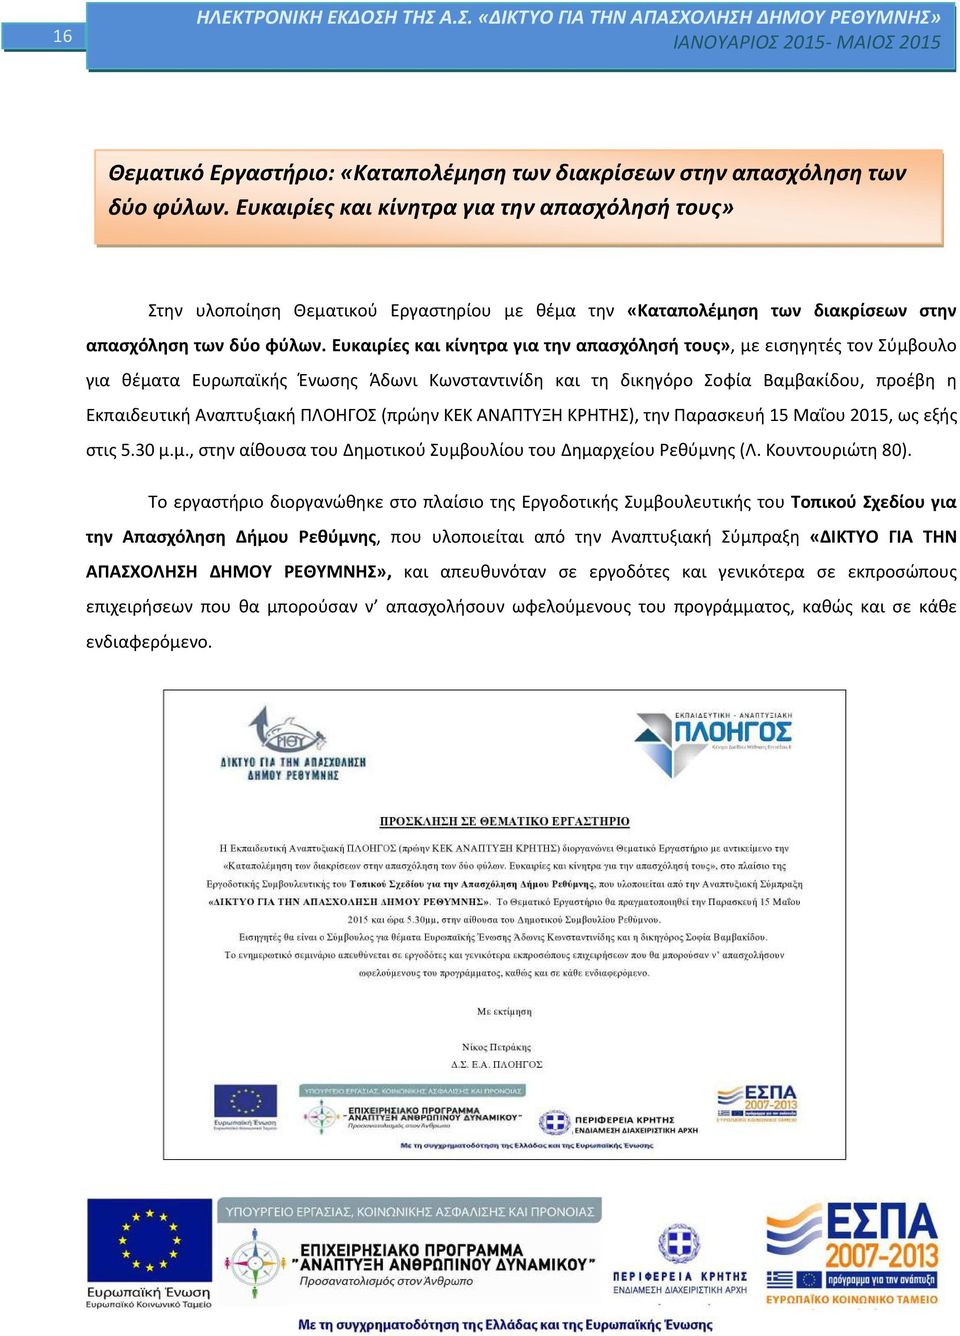 Ευκαιρίες και κίνητρα για την απασχόλησή τους», με εισηγητές τον Σύμβουλο για θέματα Ευρωπαϊκής Ένωσης Άδωνι Κωνσταντινίδη και τη δικηγόρο Σοφία Βαμβακίδου, προέβη η Εκπαιδευτική Αναπτυξιακή ΠΛΟΗΓΟΣ